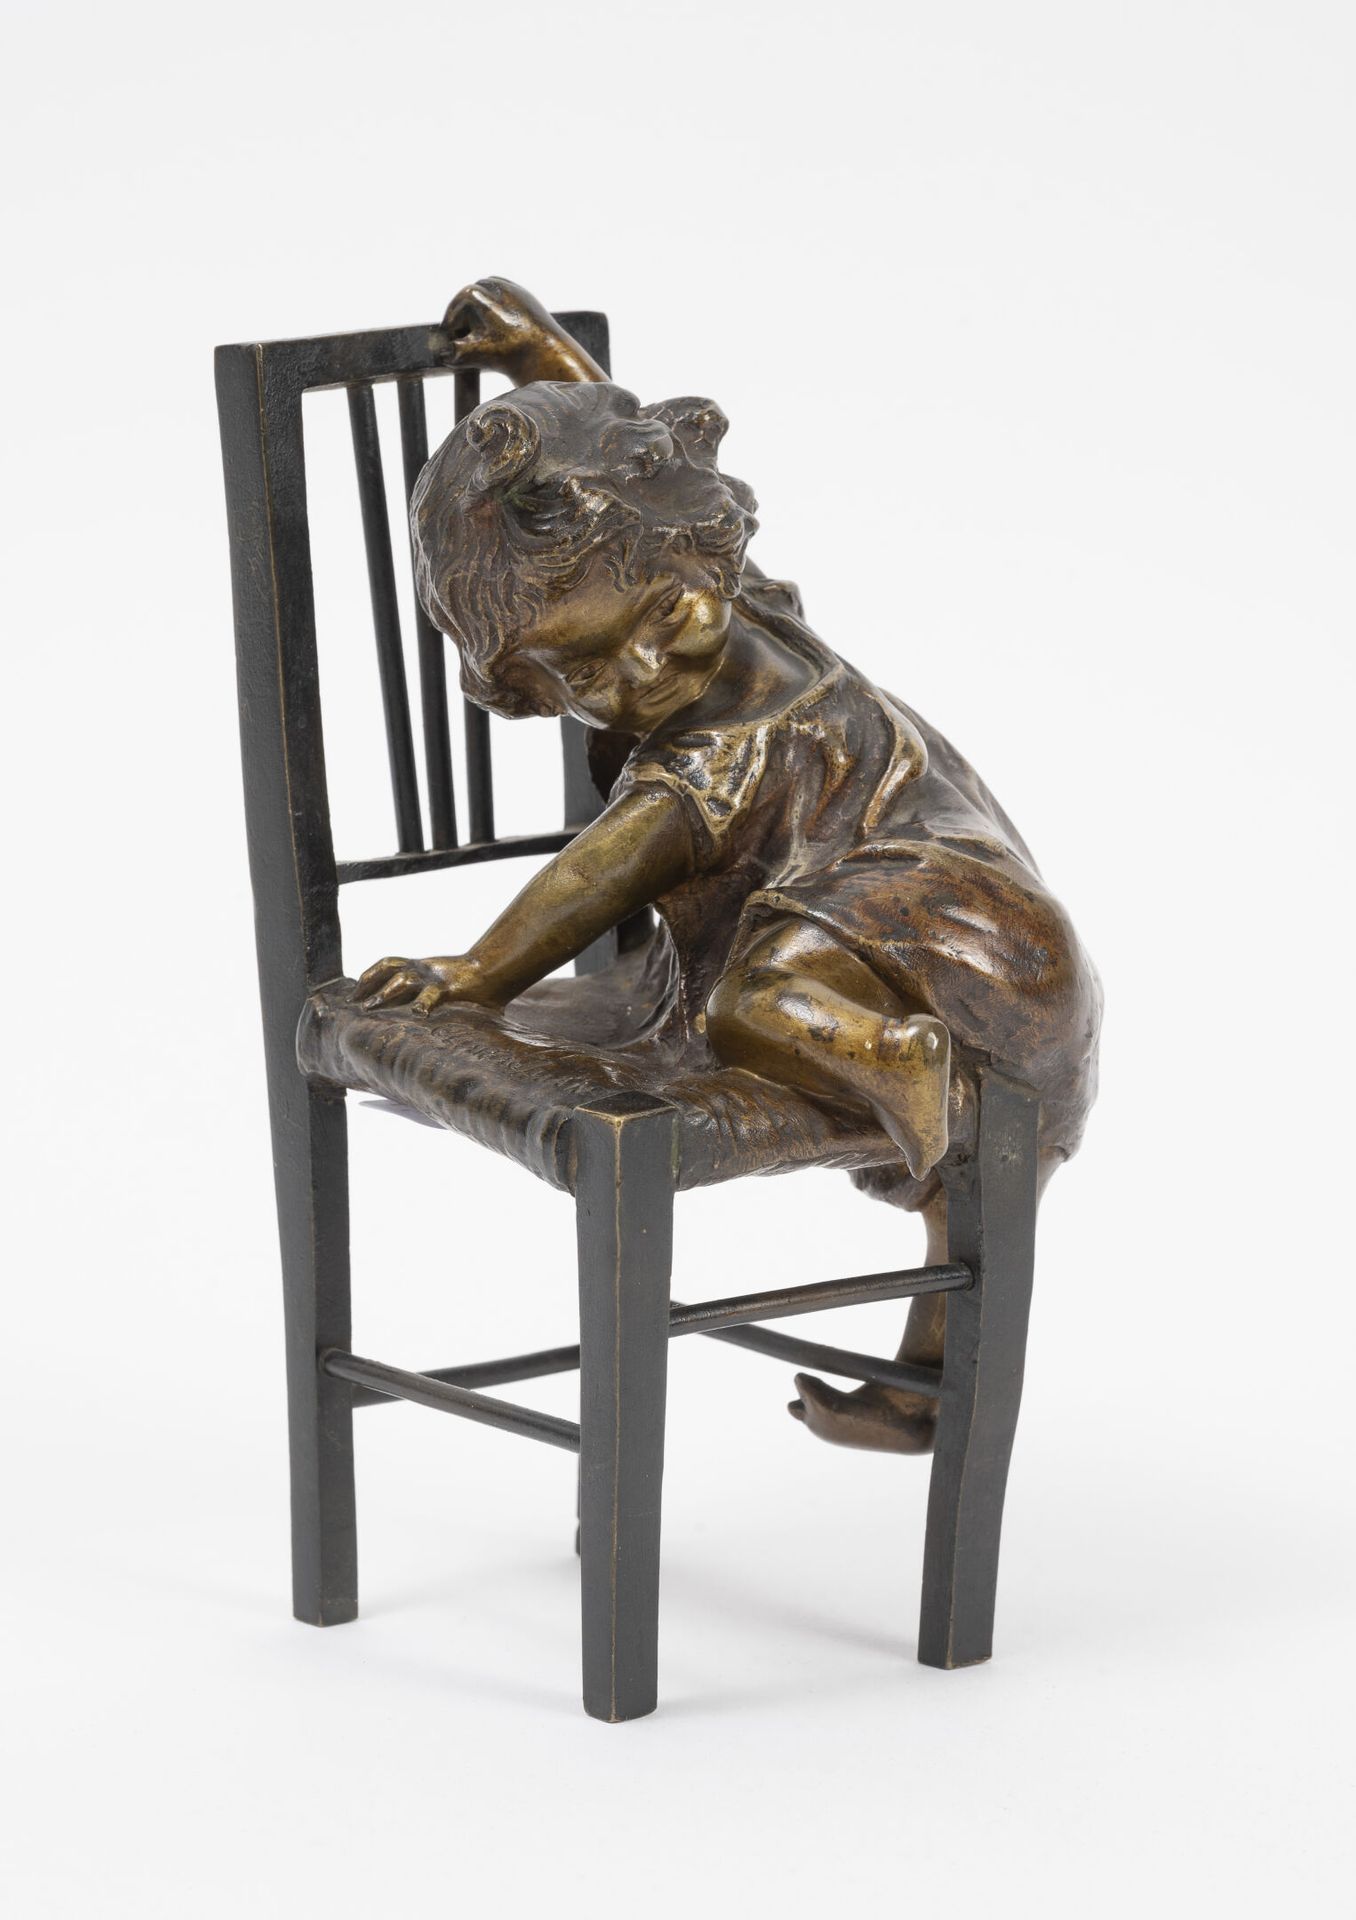 Juan CLARA AYATS (1875-1958) Mädchen mit einem Stuhl.
Bronzeabguss mit nuanciert&hellip;